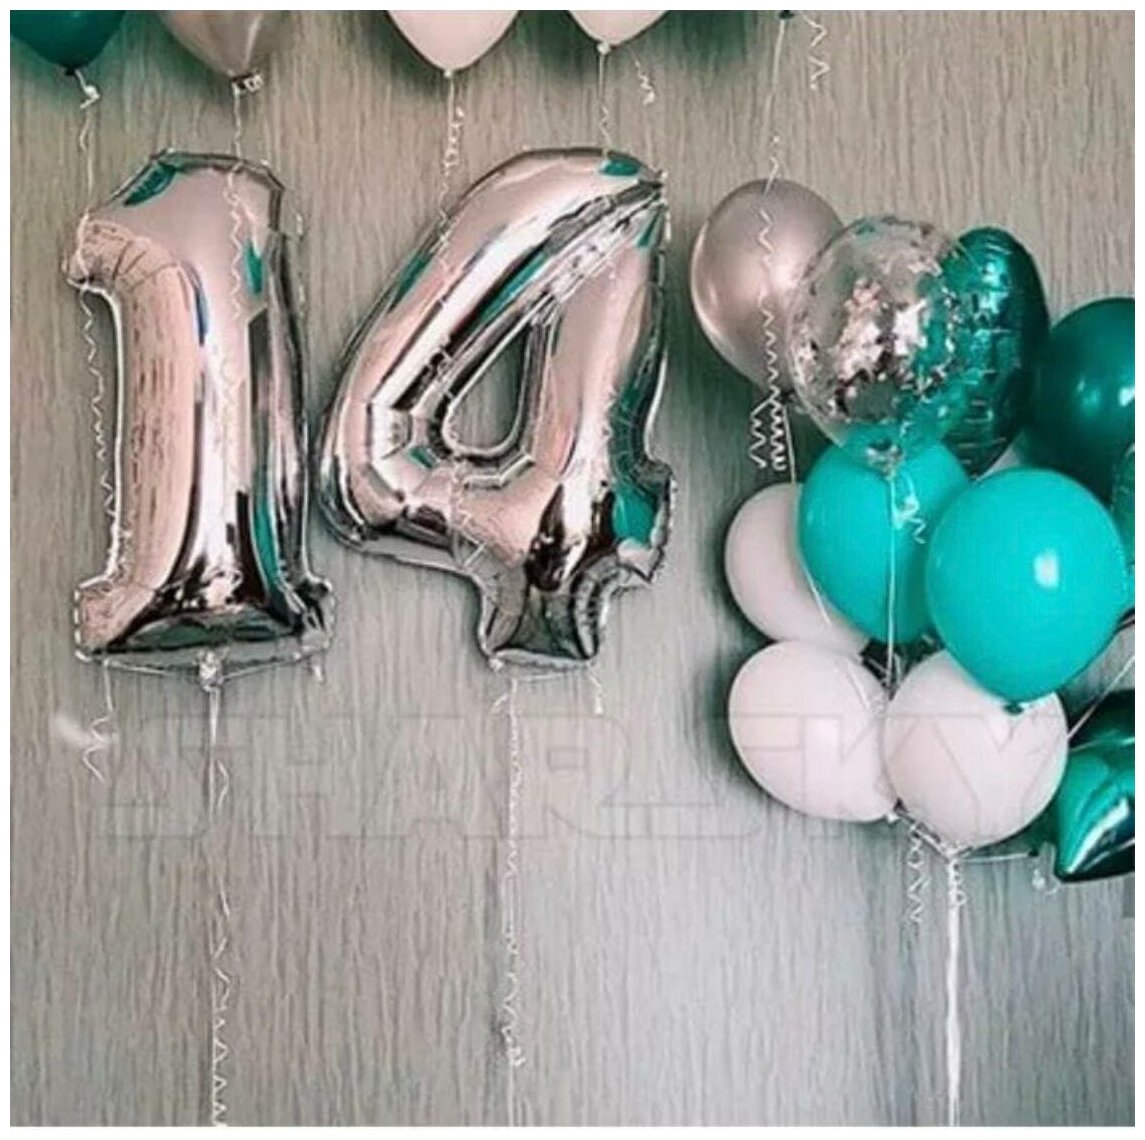 Цифры и шары на день рождения